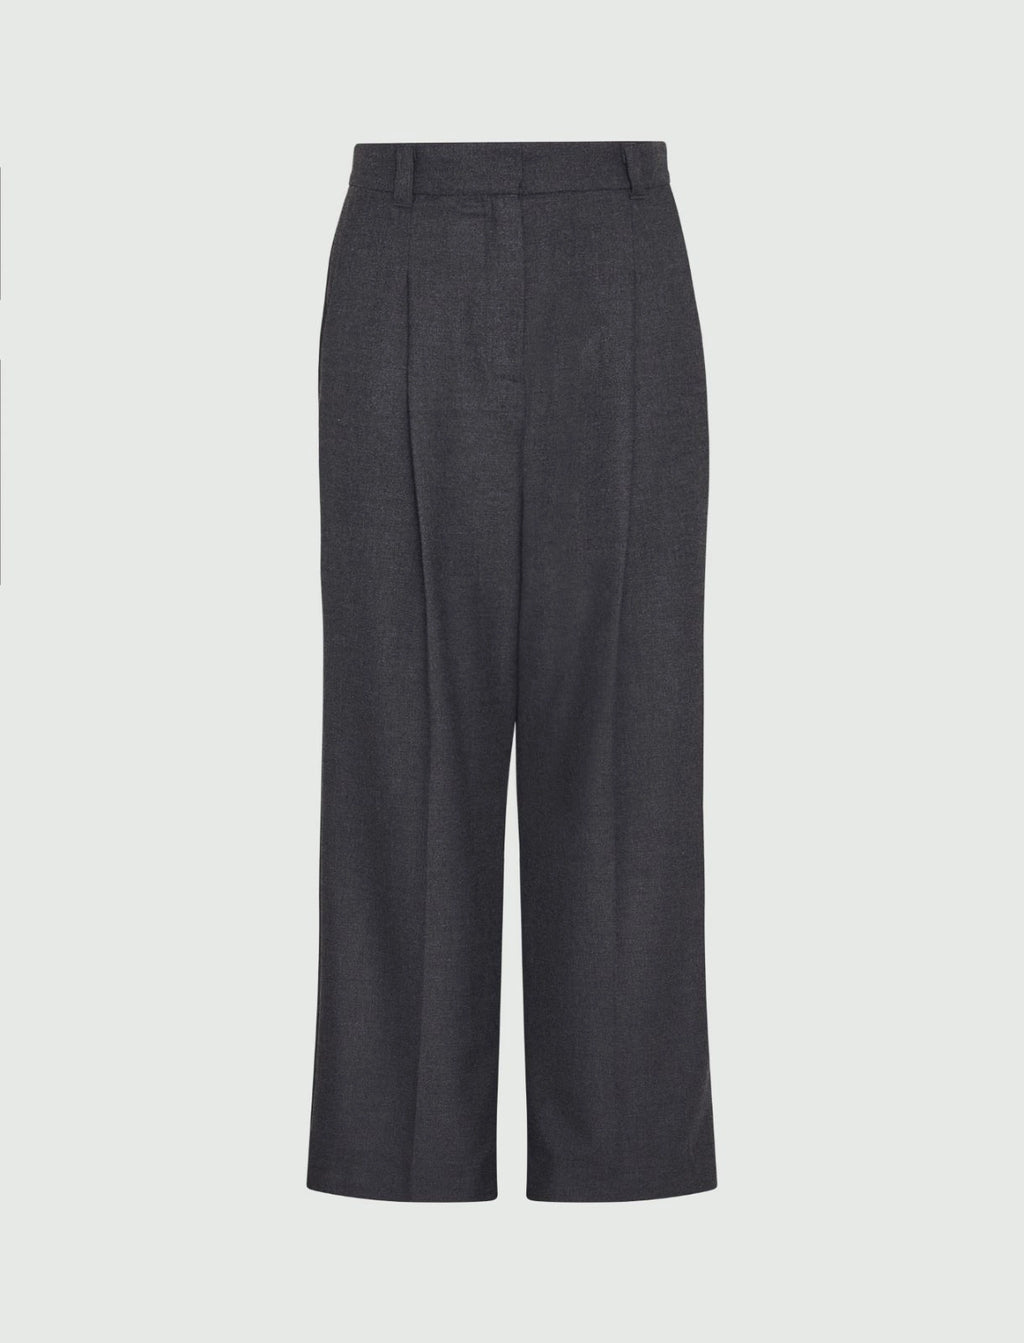 grey wide-leg trousers